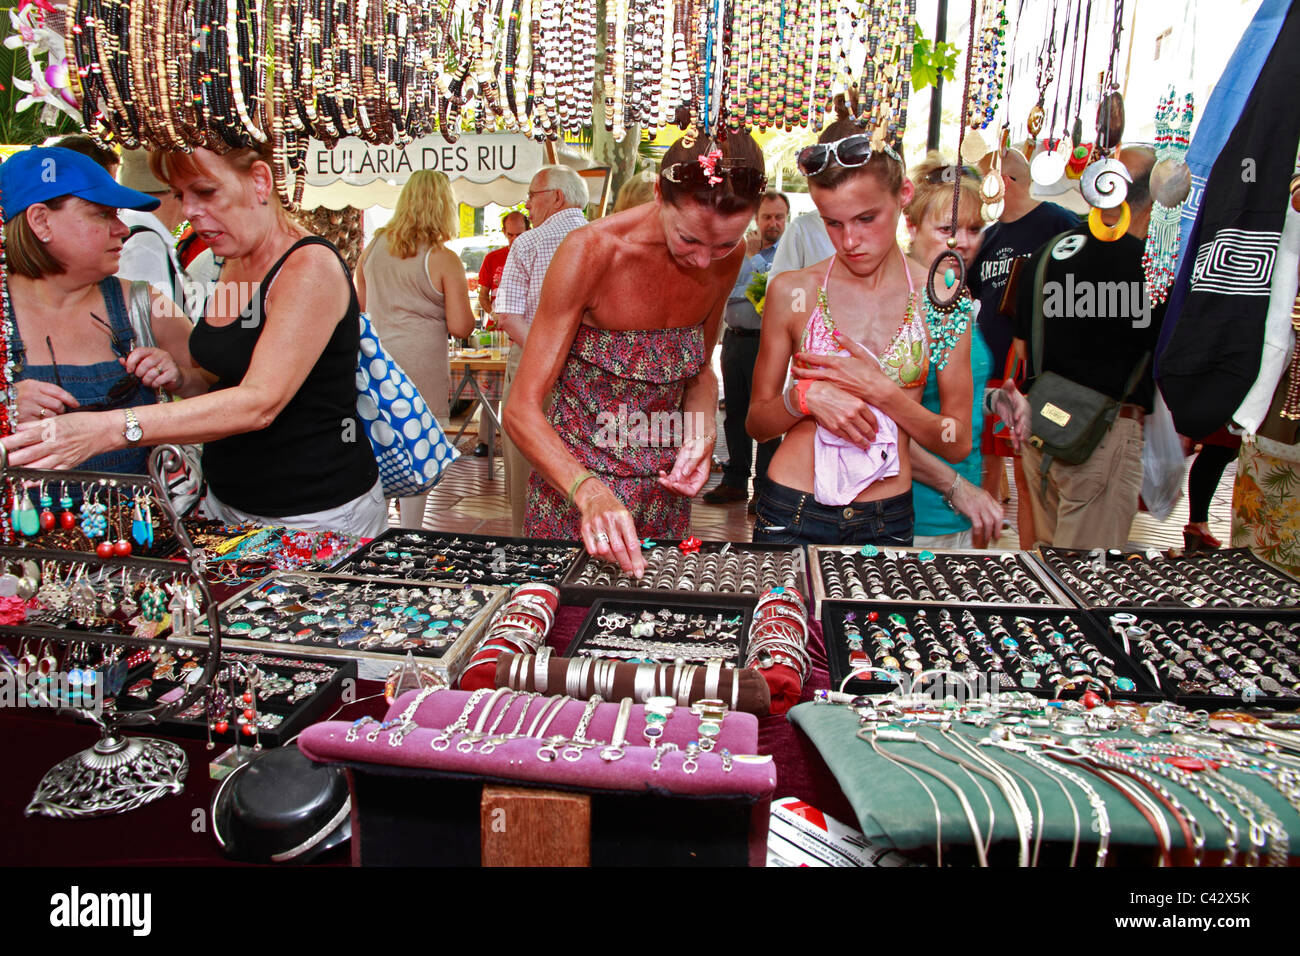 Les touristes shopping dans un marché Hippie, Santa Eulalia, Ibiza, Espagne Banque D'Images